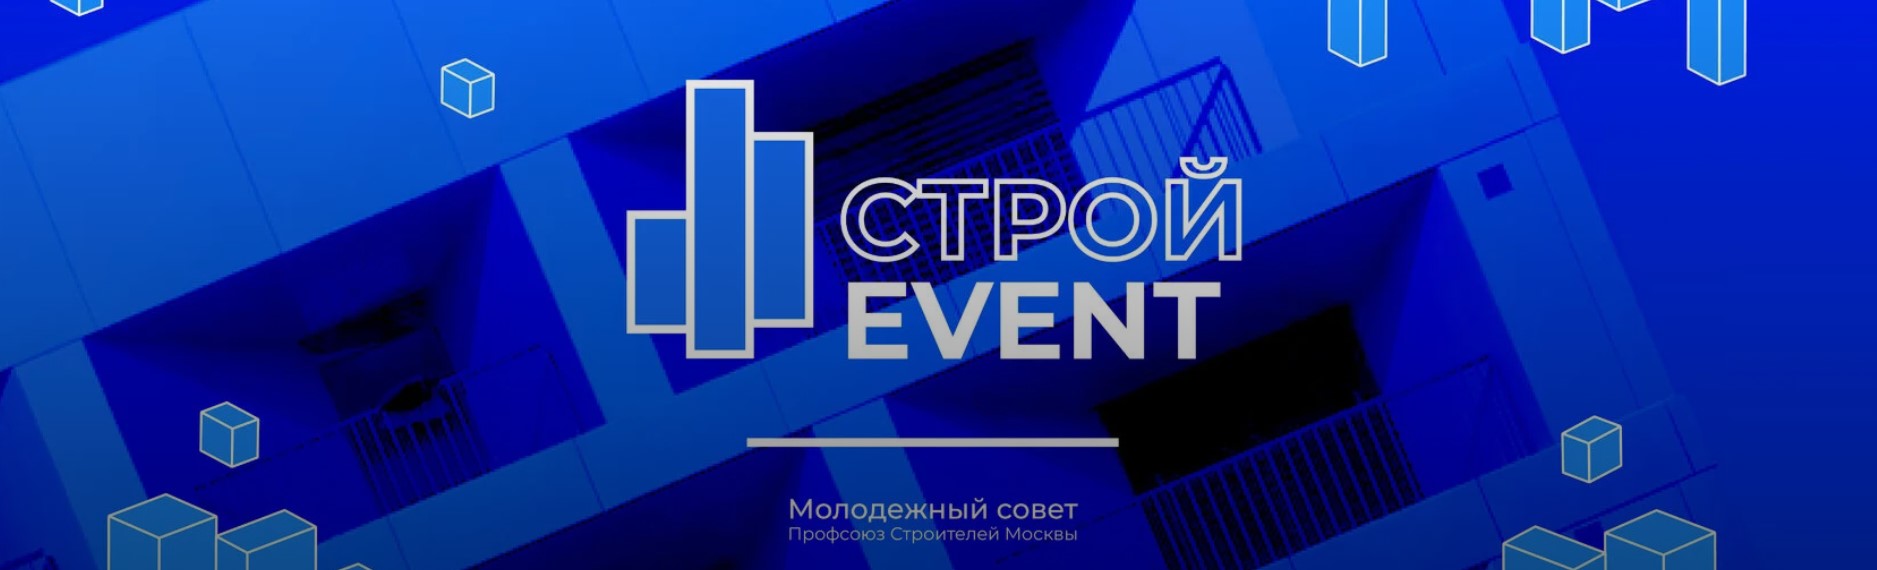 На площадке ГБУ «Мосстройинформ» состоялся строительный форум «Строй - EVENT»